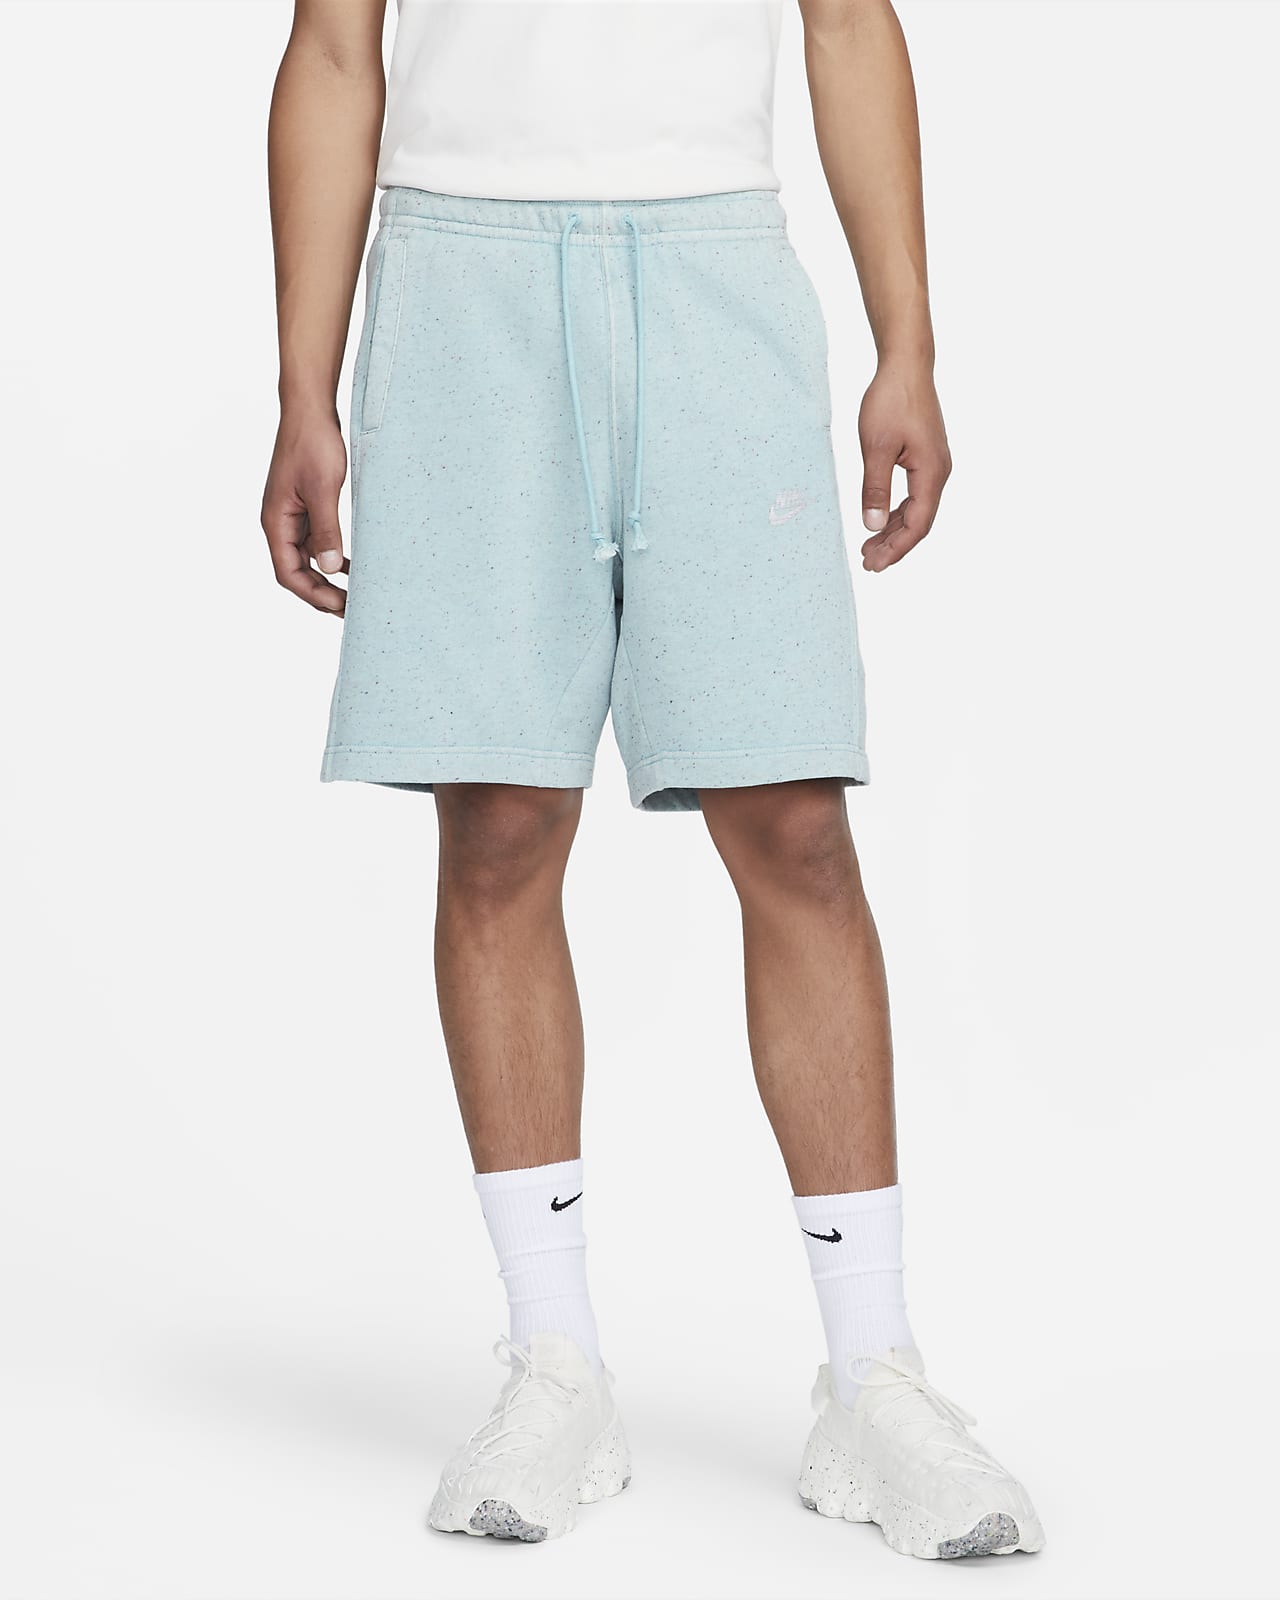 Shorts para hombre Nike Club Fleece+.